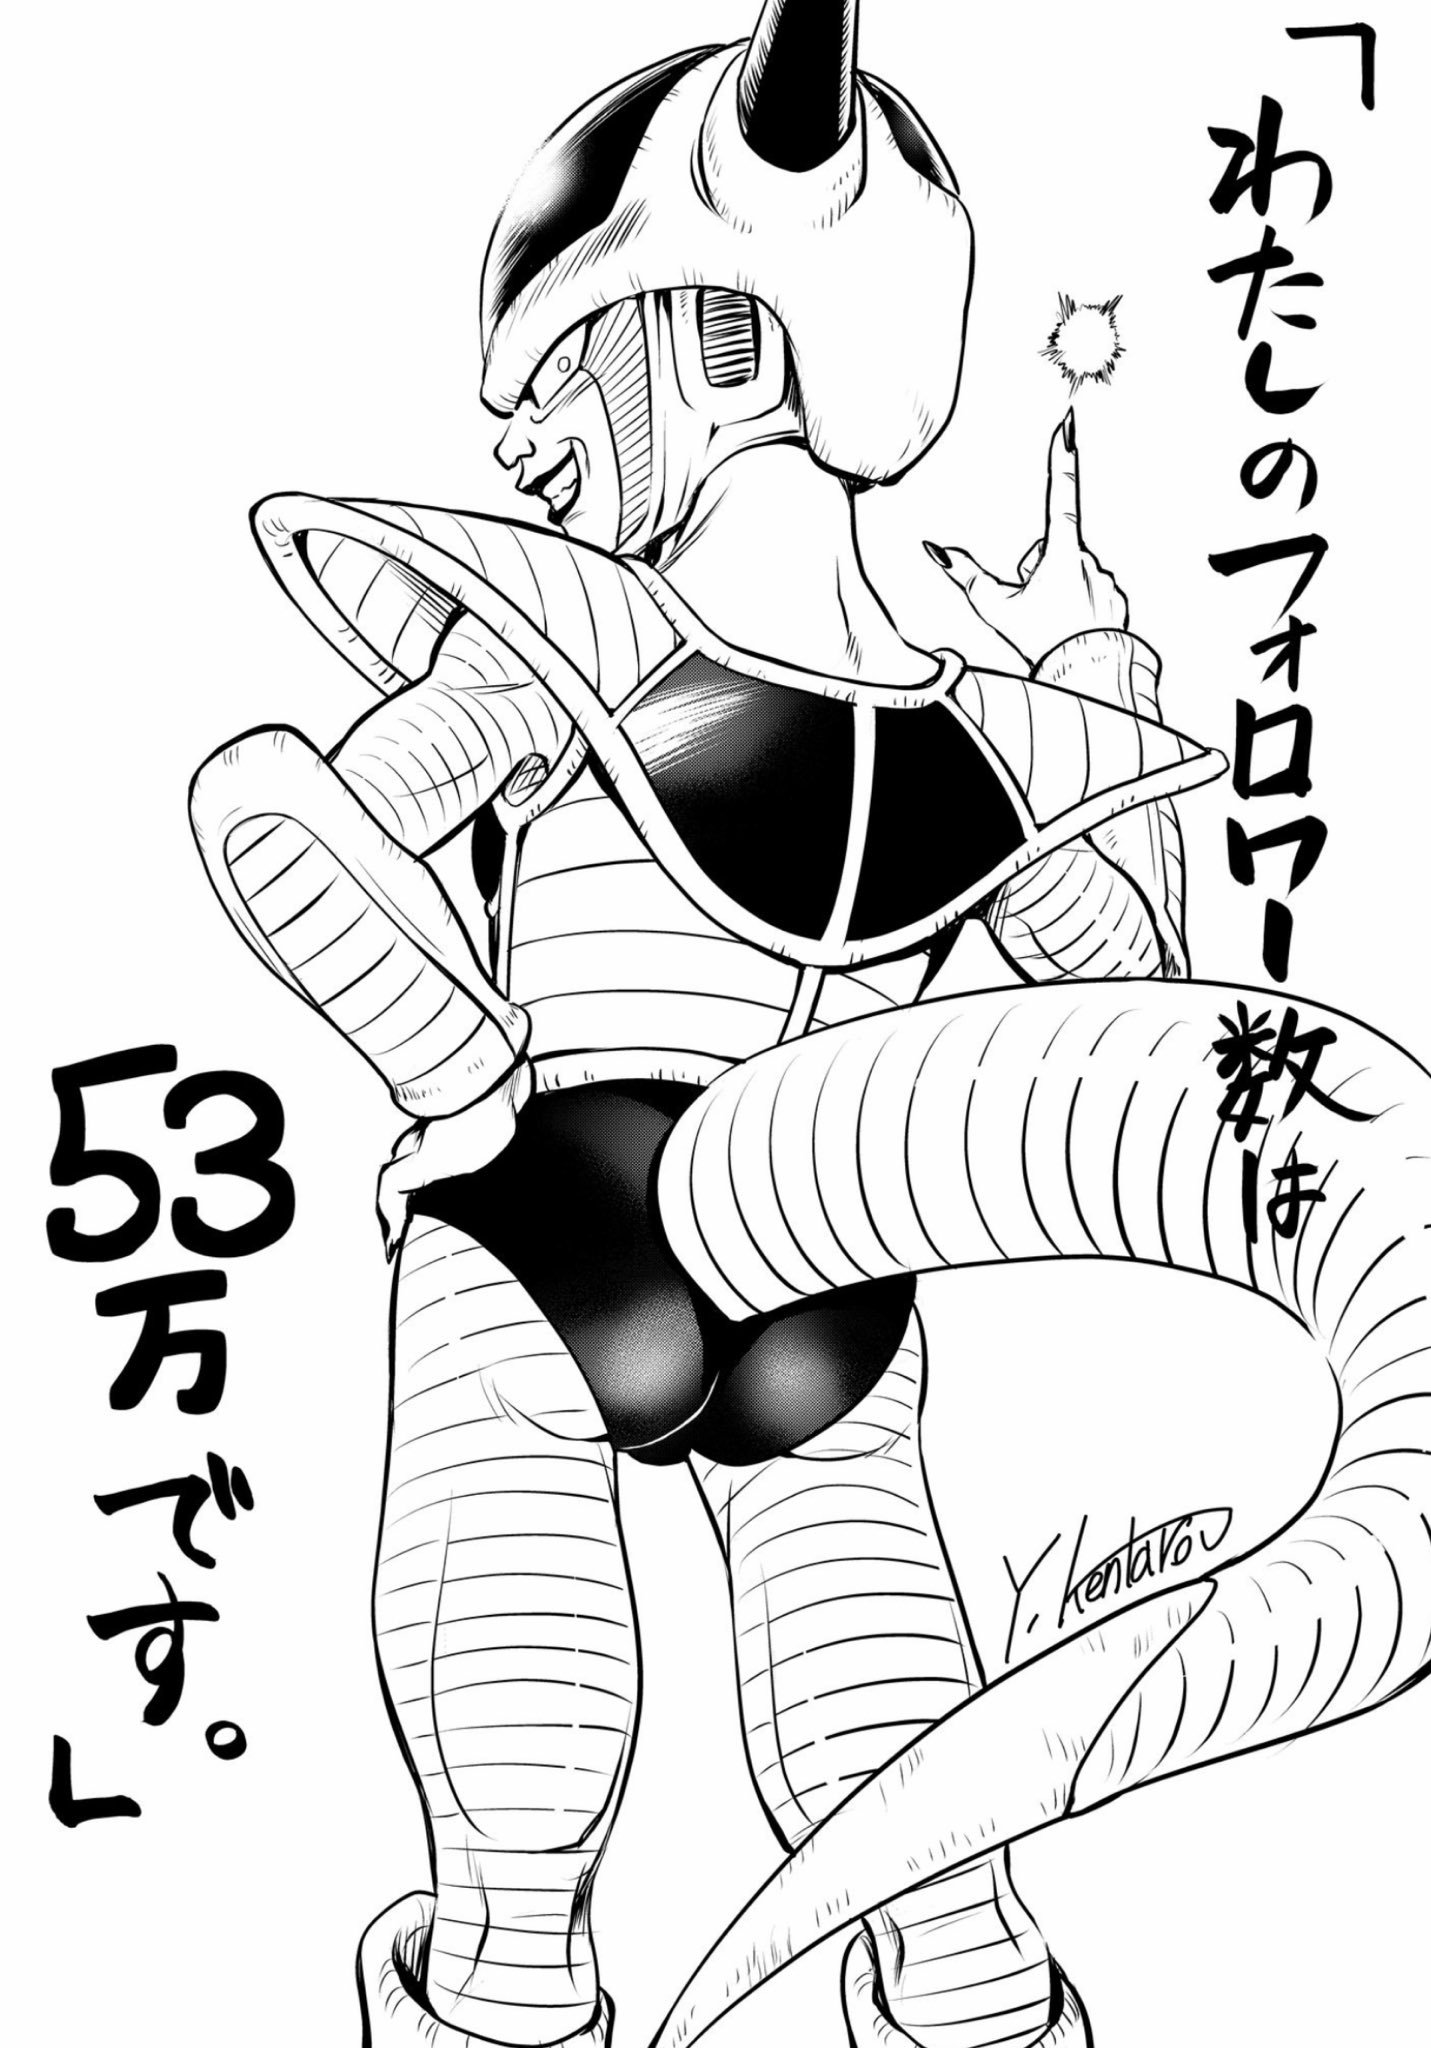 矢吹健太朗繪弗利薩 《大和號永恆的REBEL 3199》宣布製作 《博插畫集~明日醬的足跡~》發售